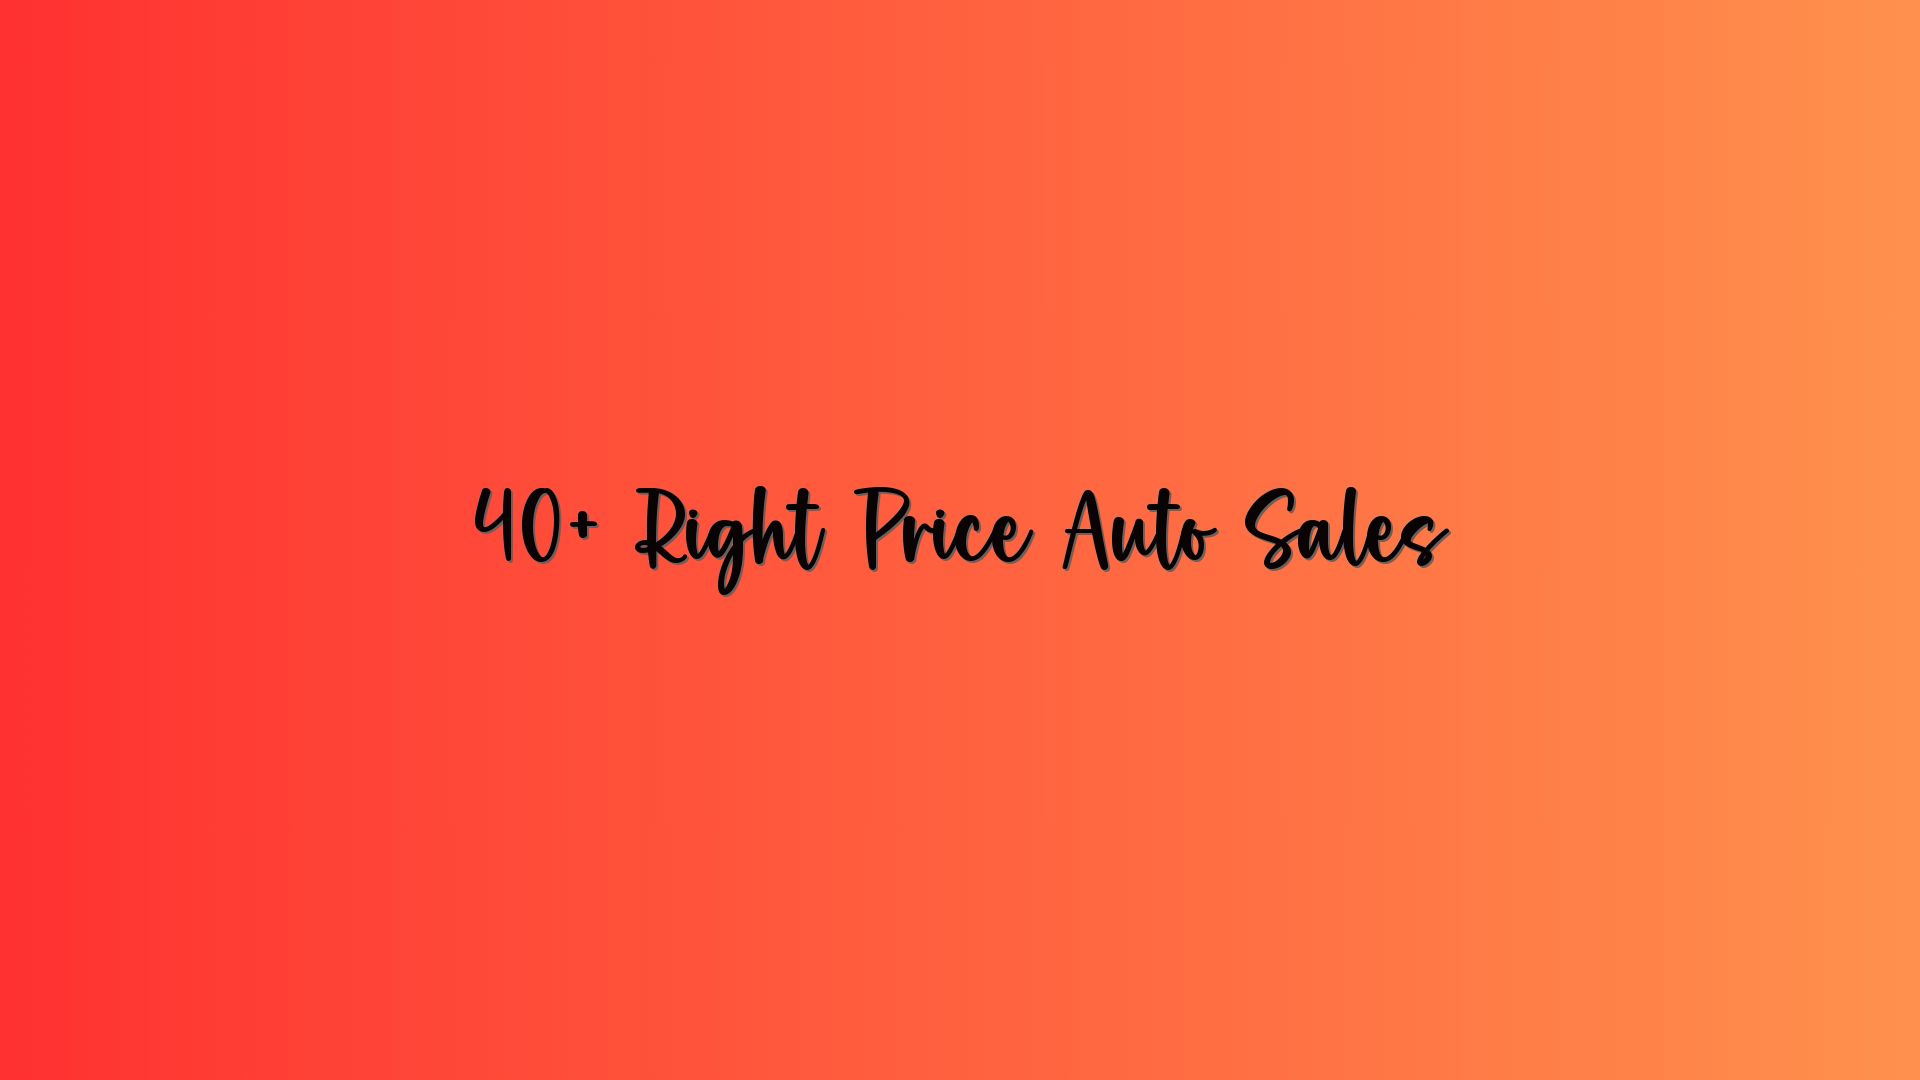 40+ Right Price Auto Sales